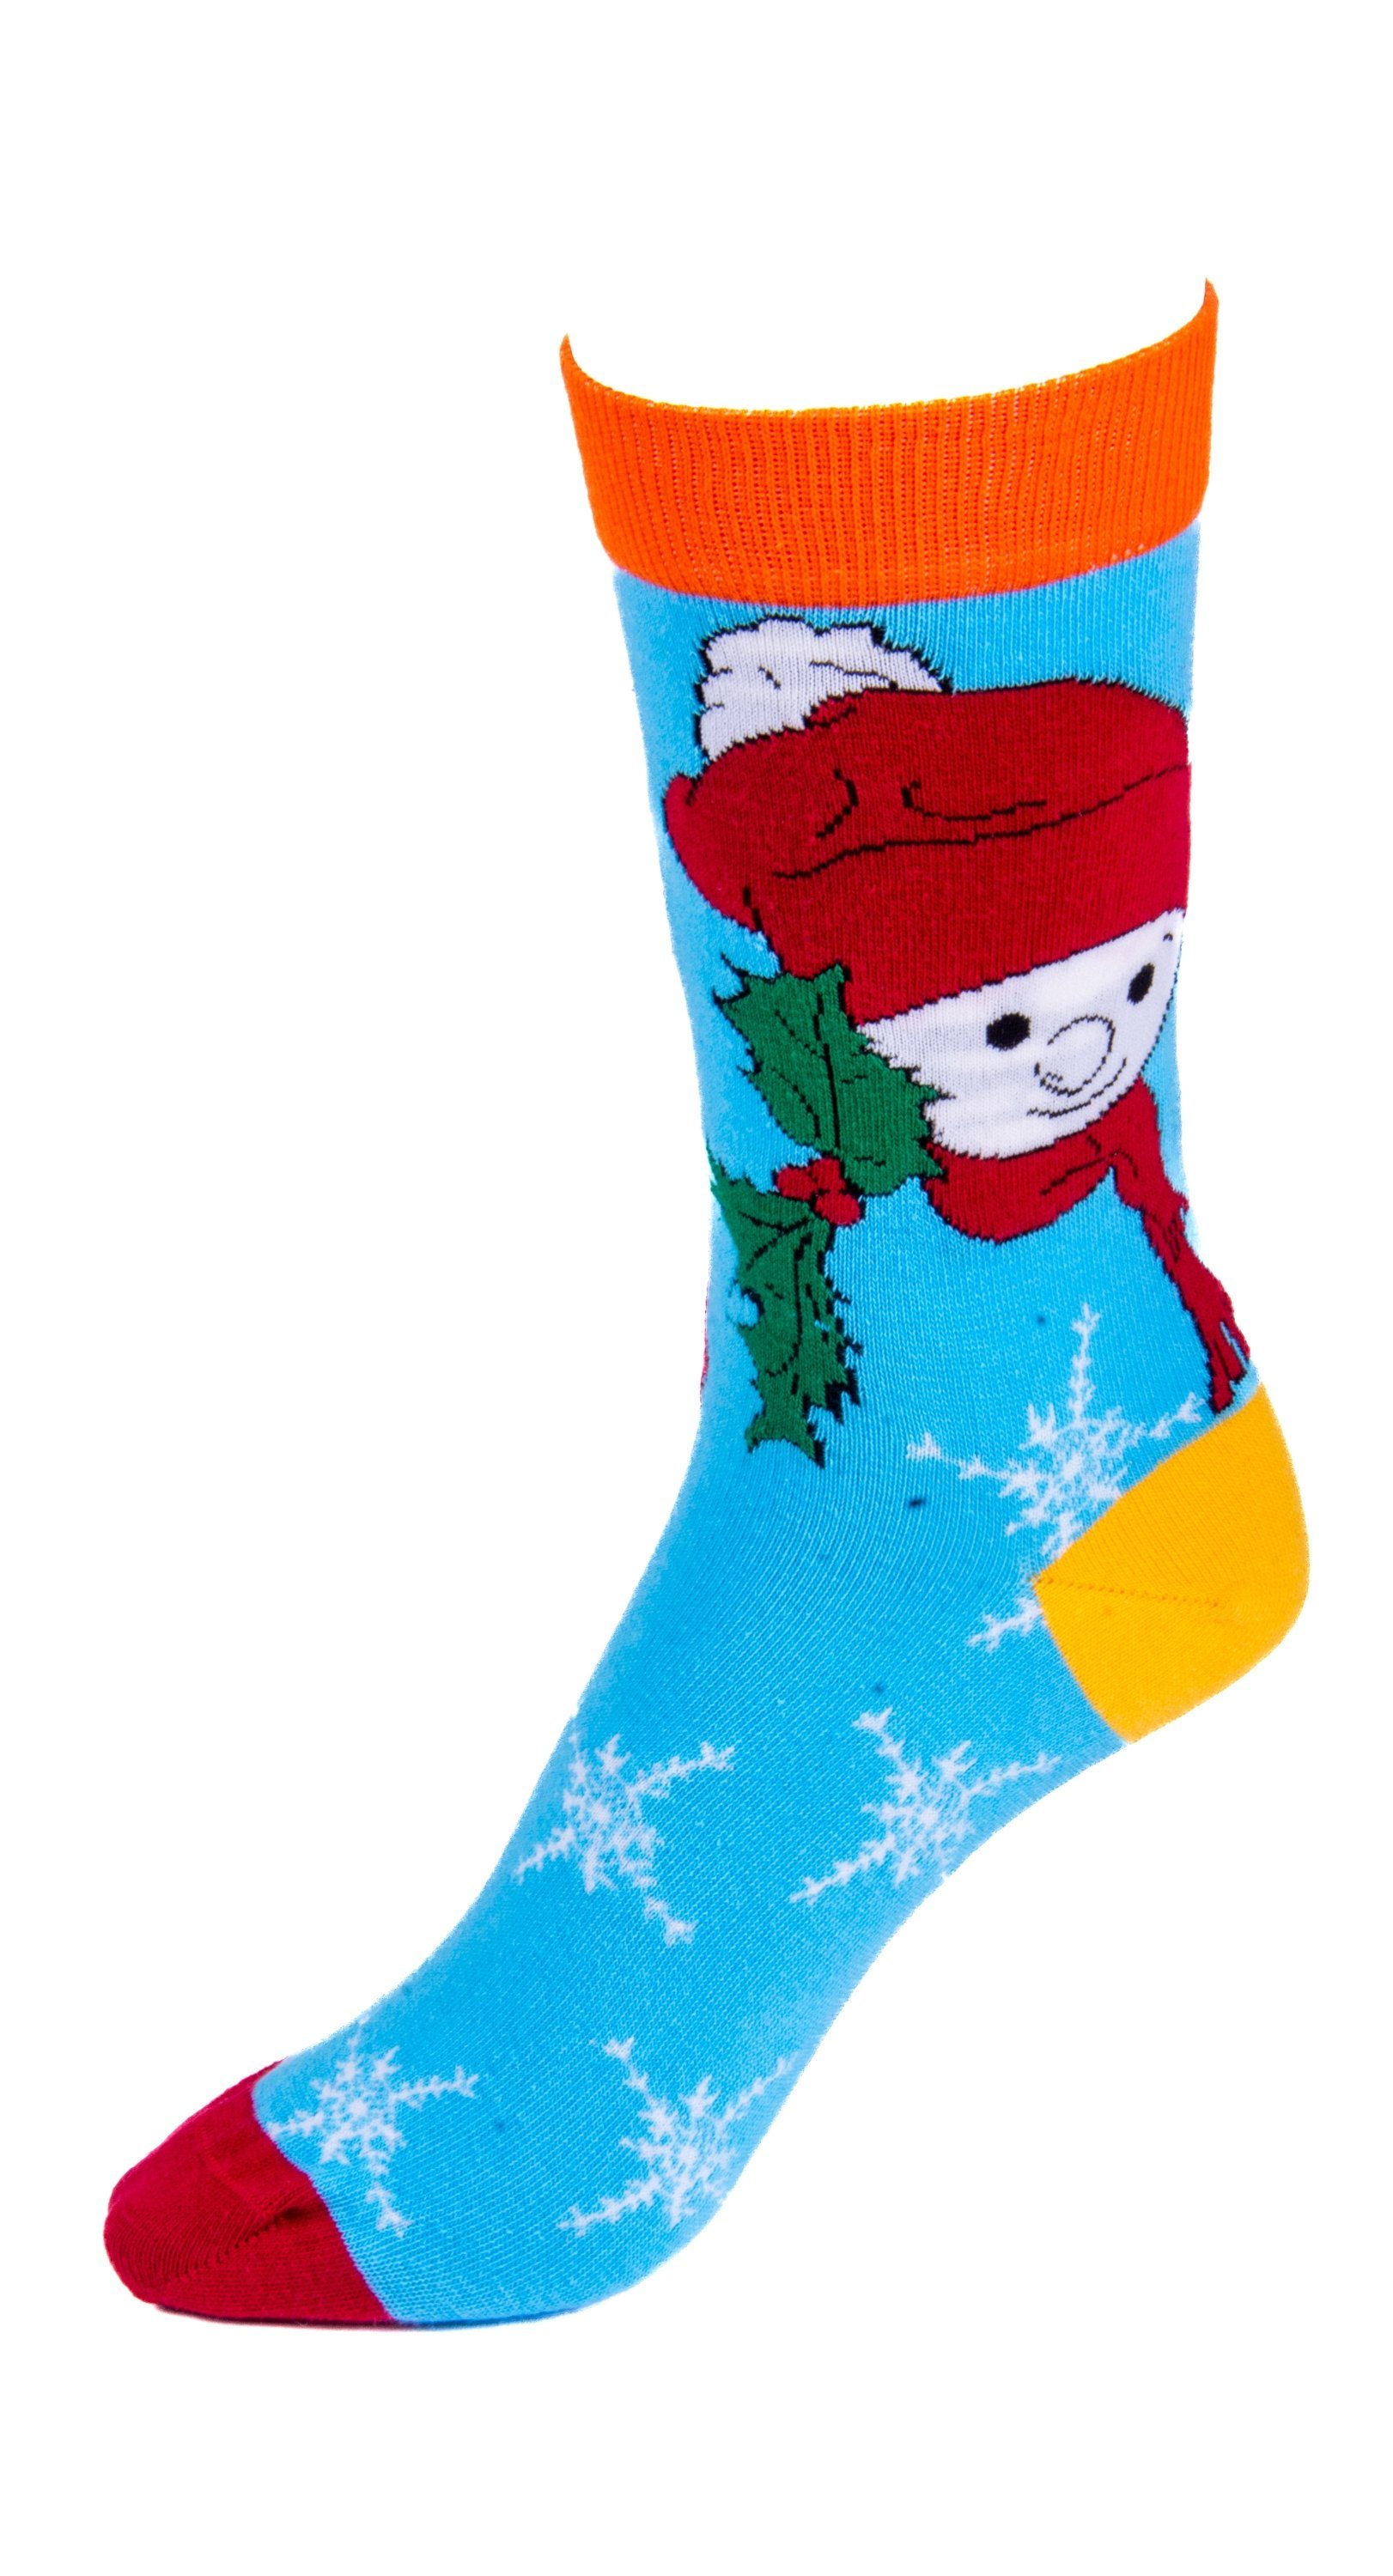 Merci Socken mit süßem Schneemann-Design - 3er Pack